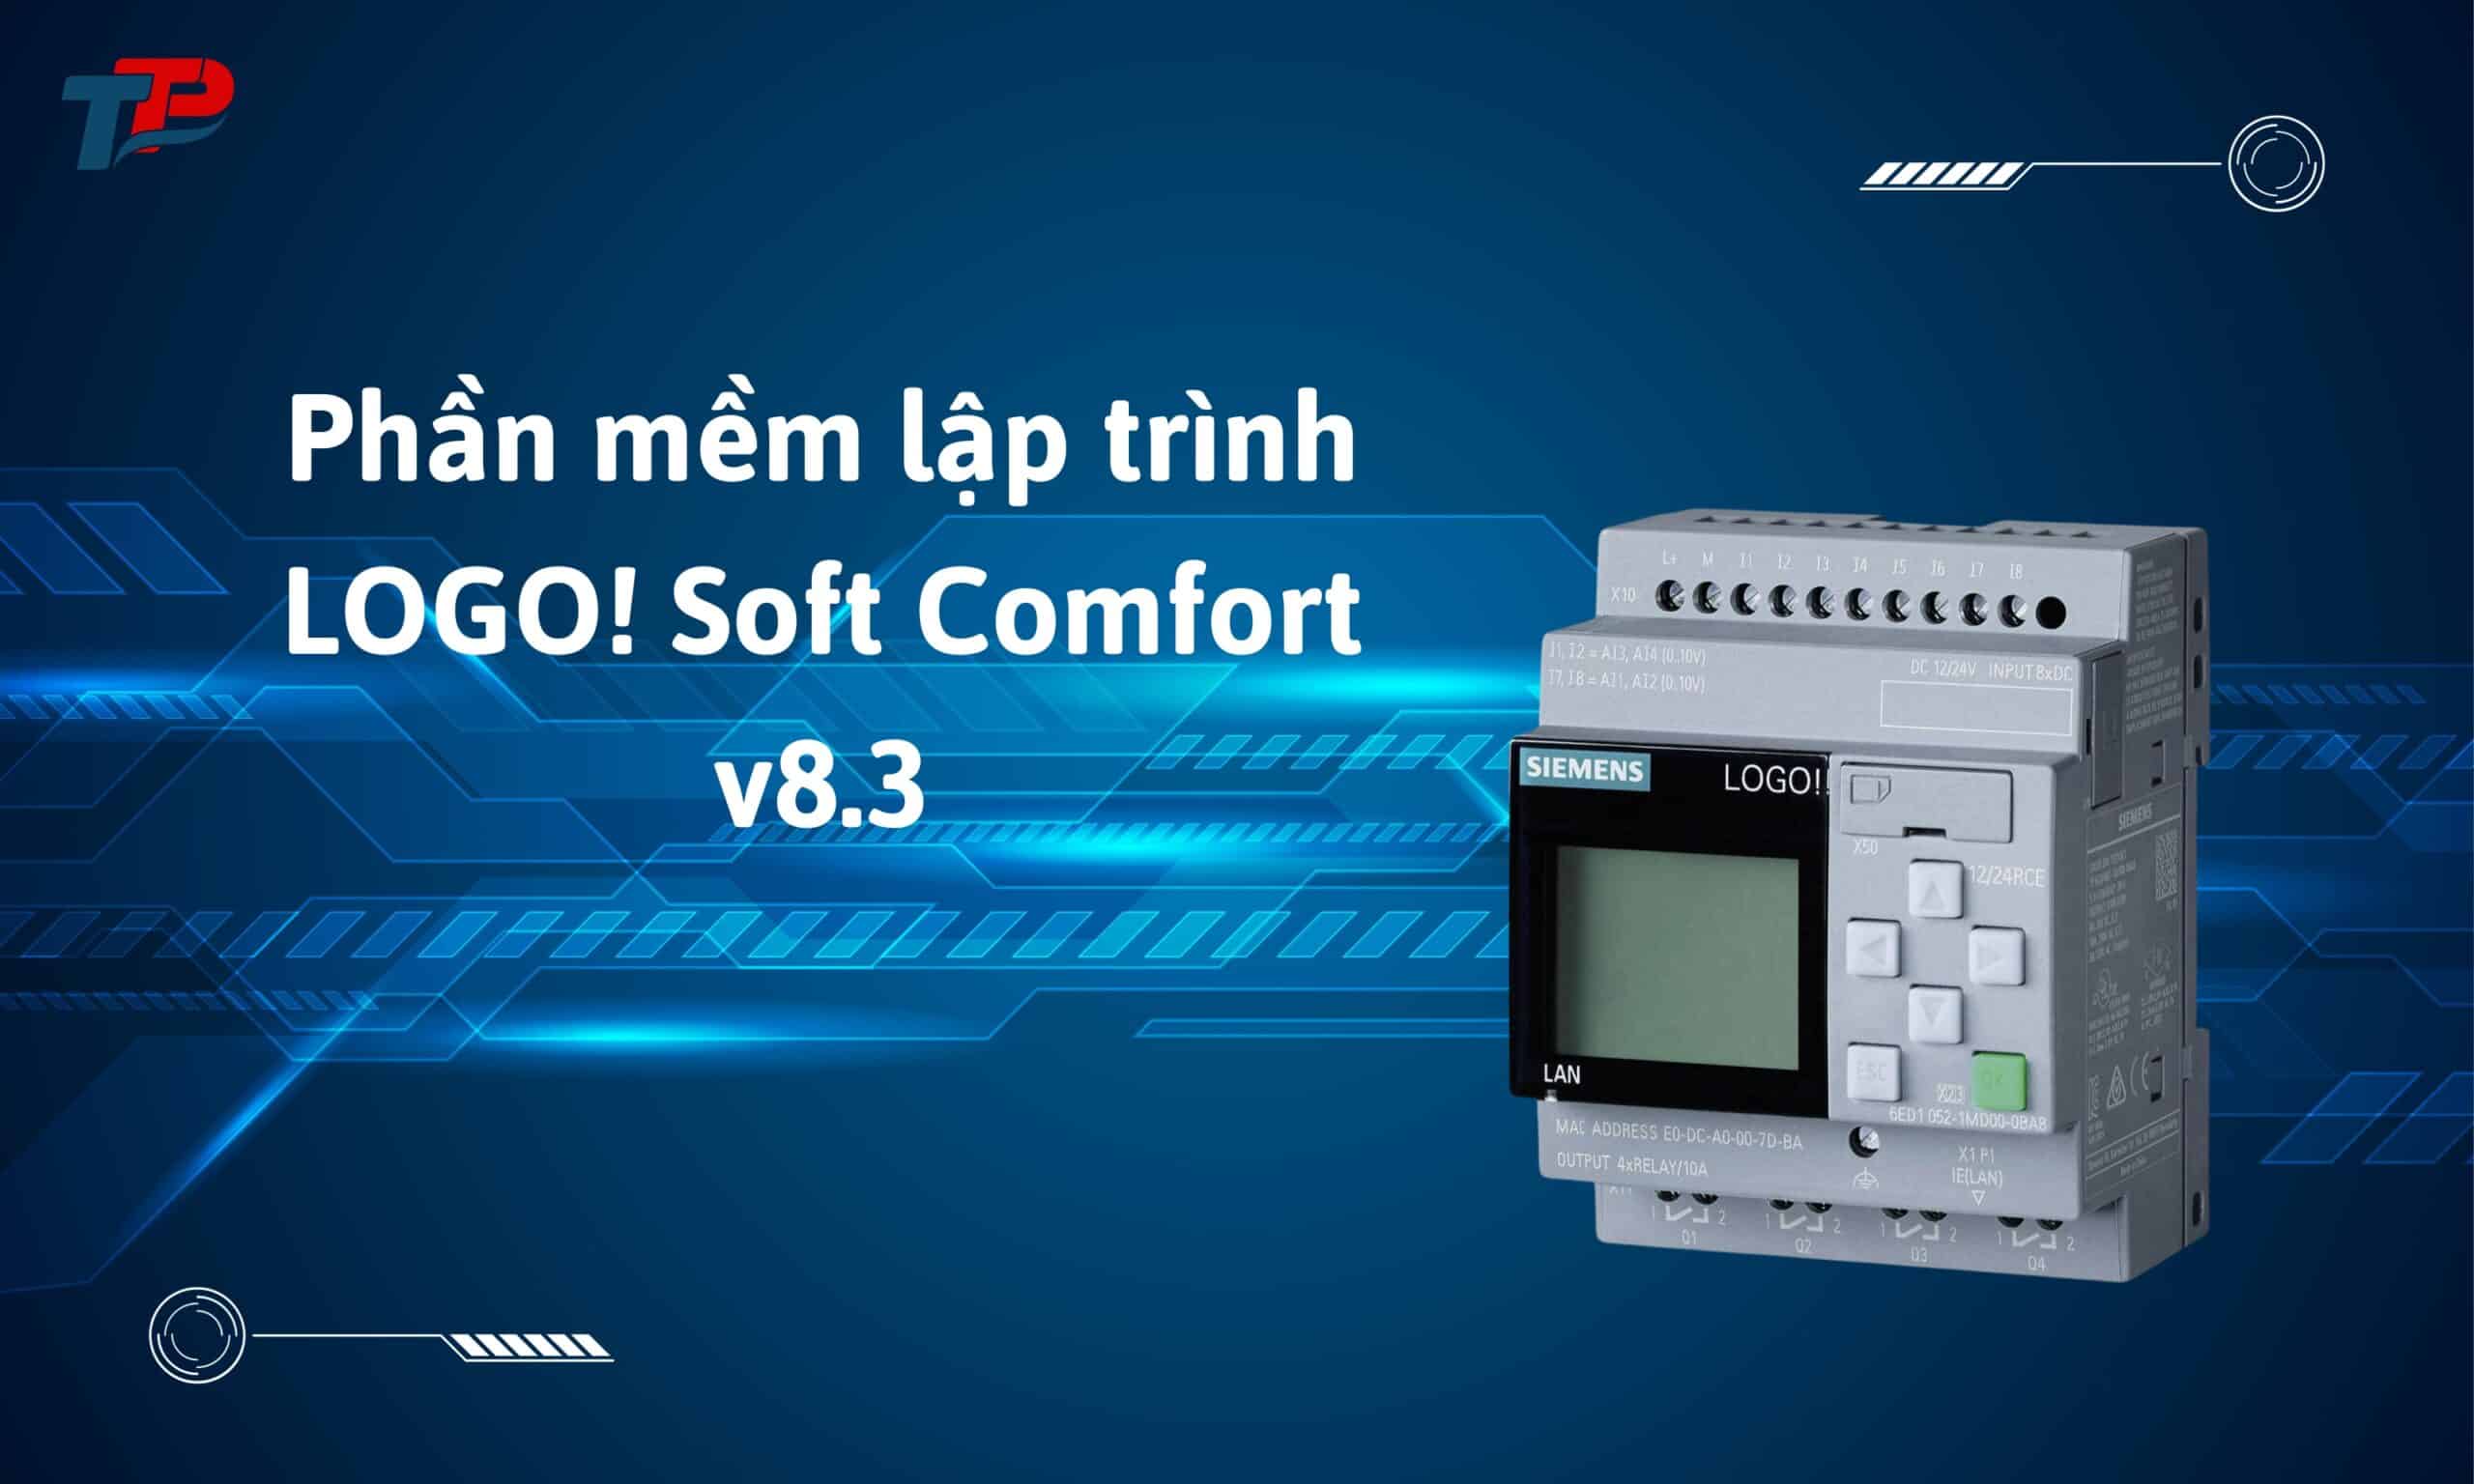 phan-mem-lap-trinh-logo-soft-comfort-v8.3